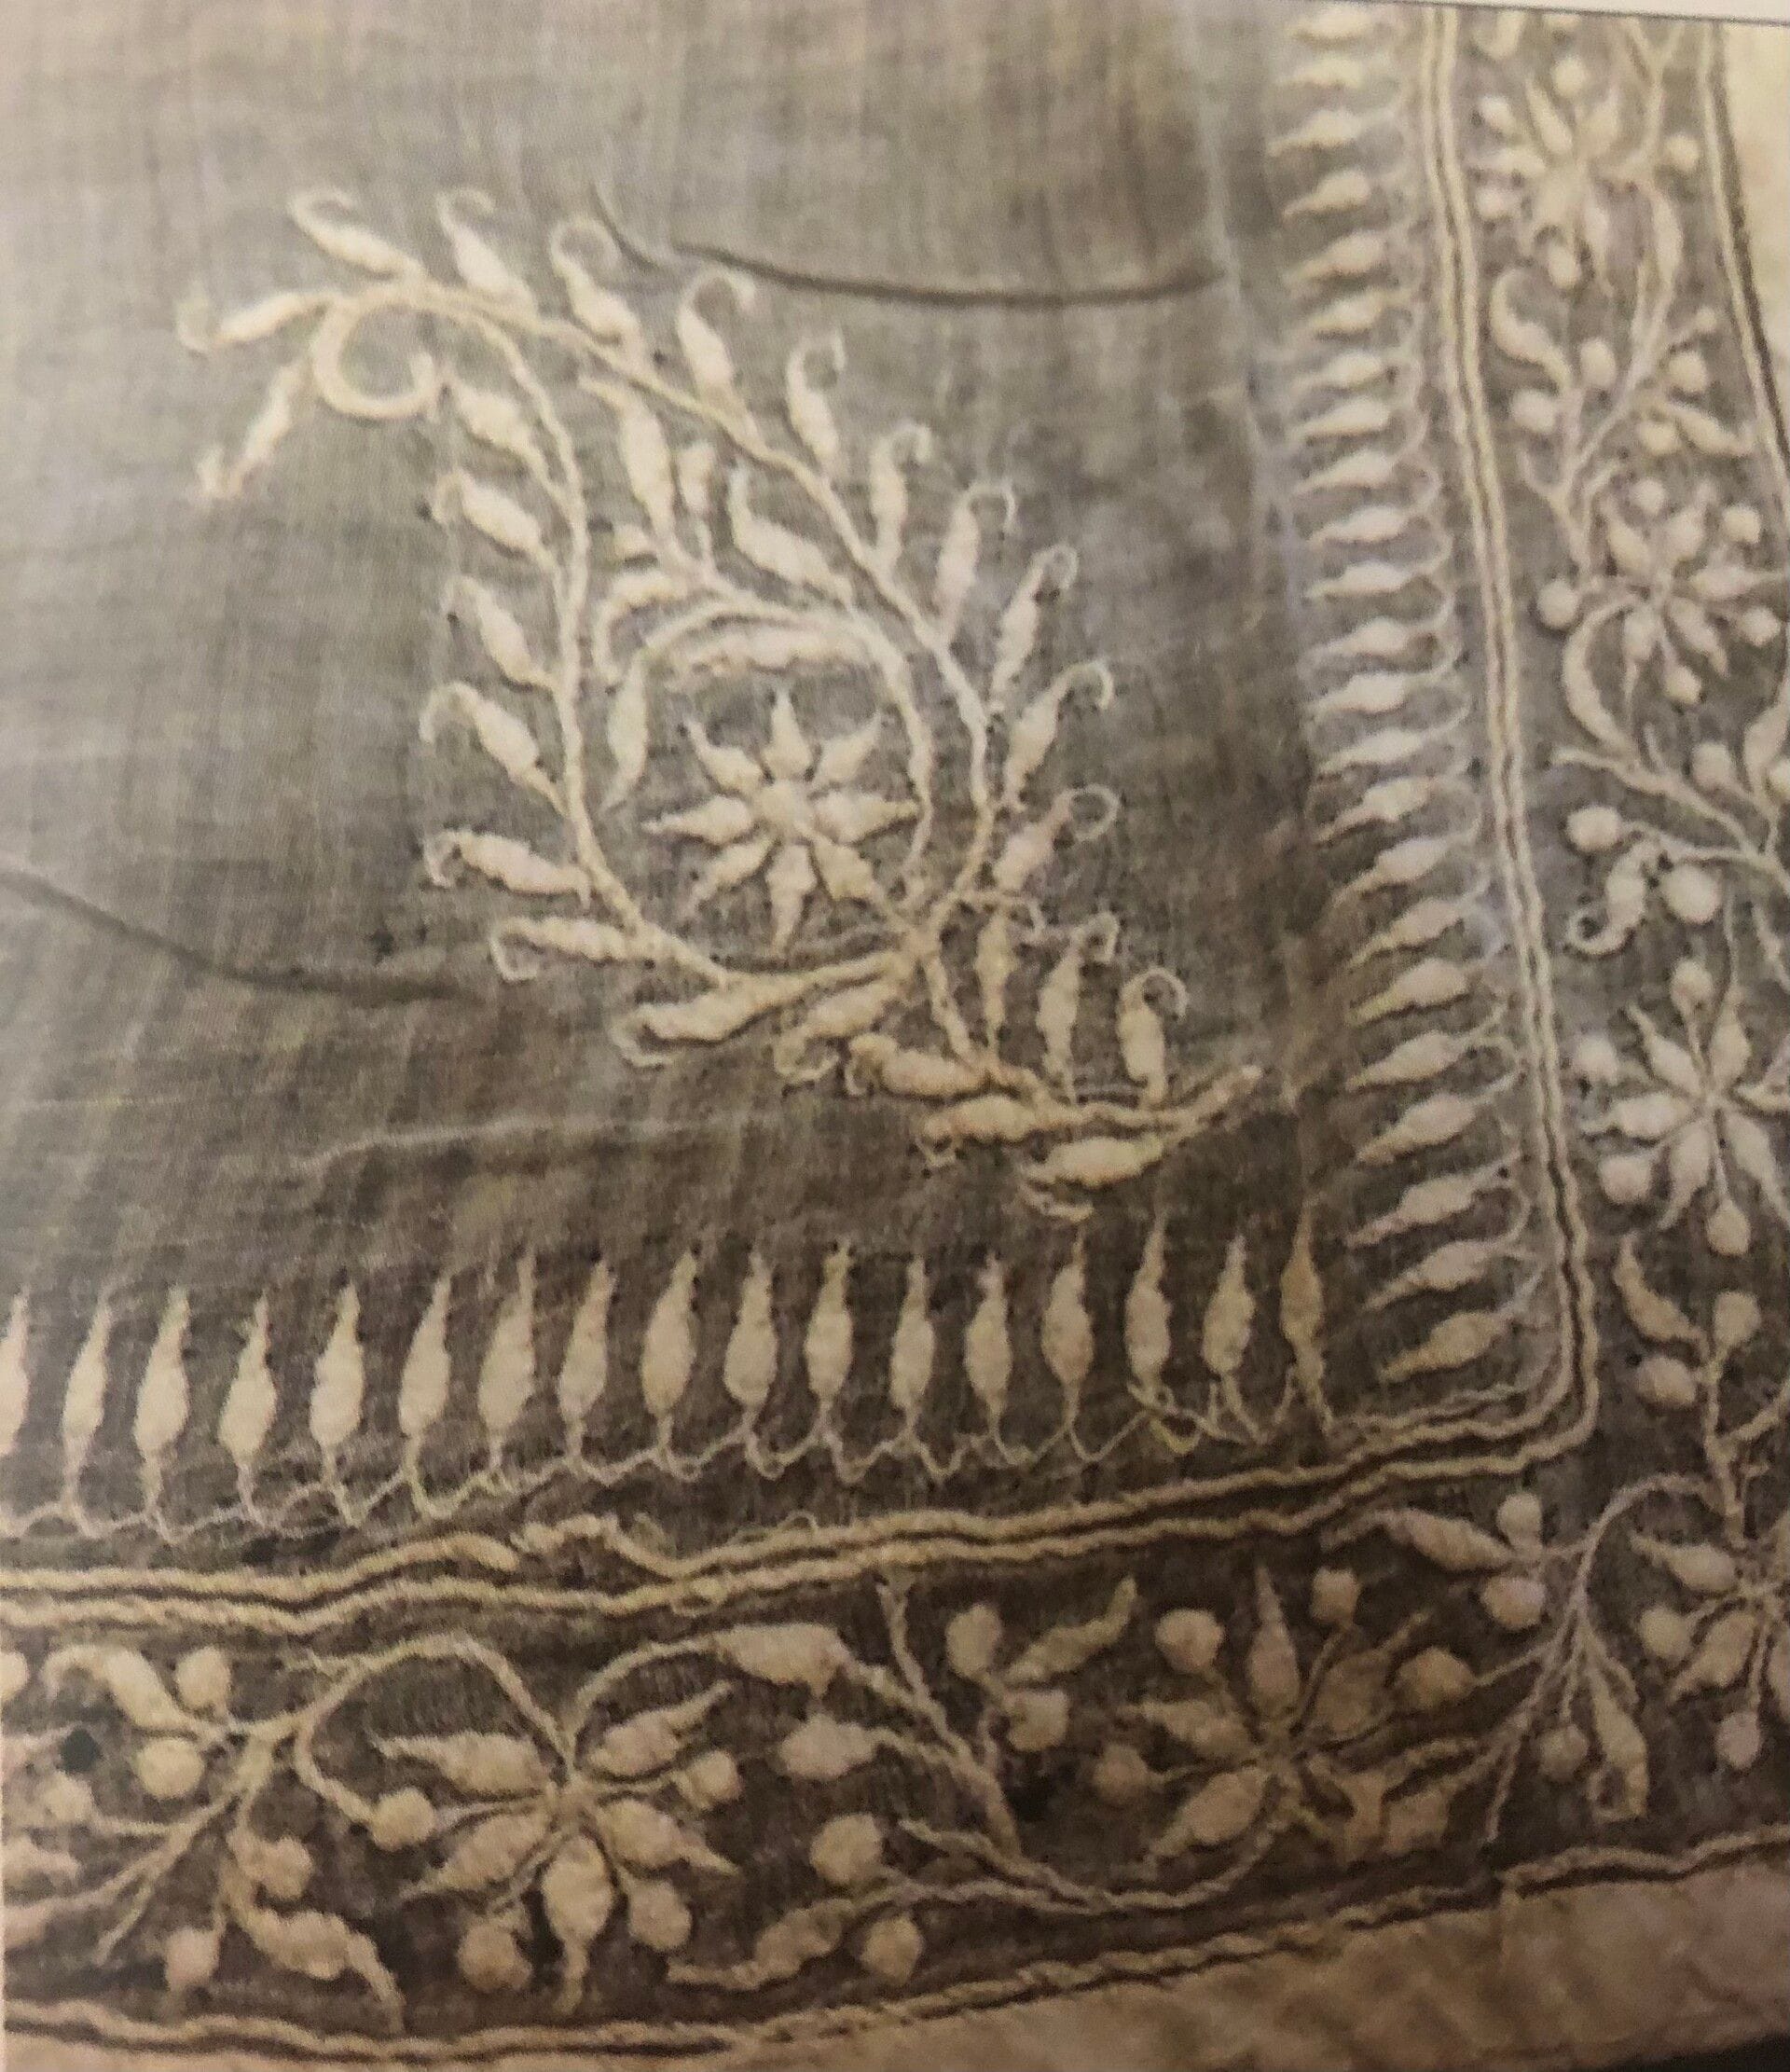 White on White Embroidery of India- Chikankari Embroidery